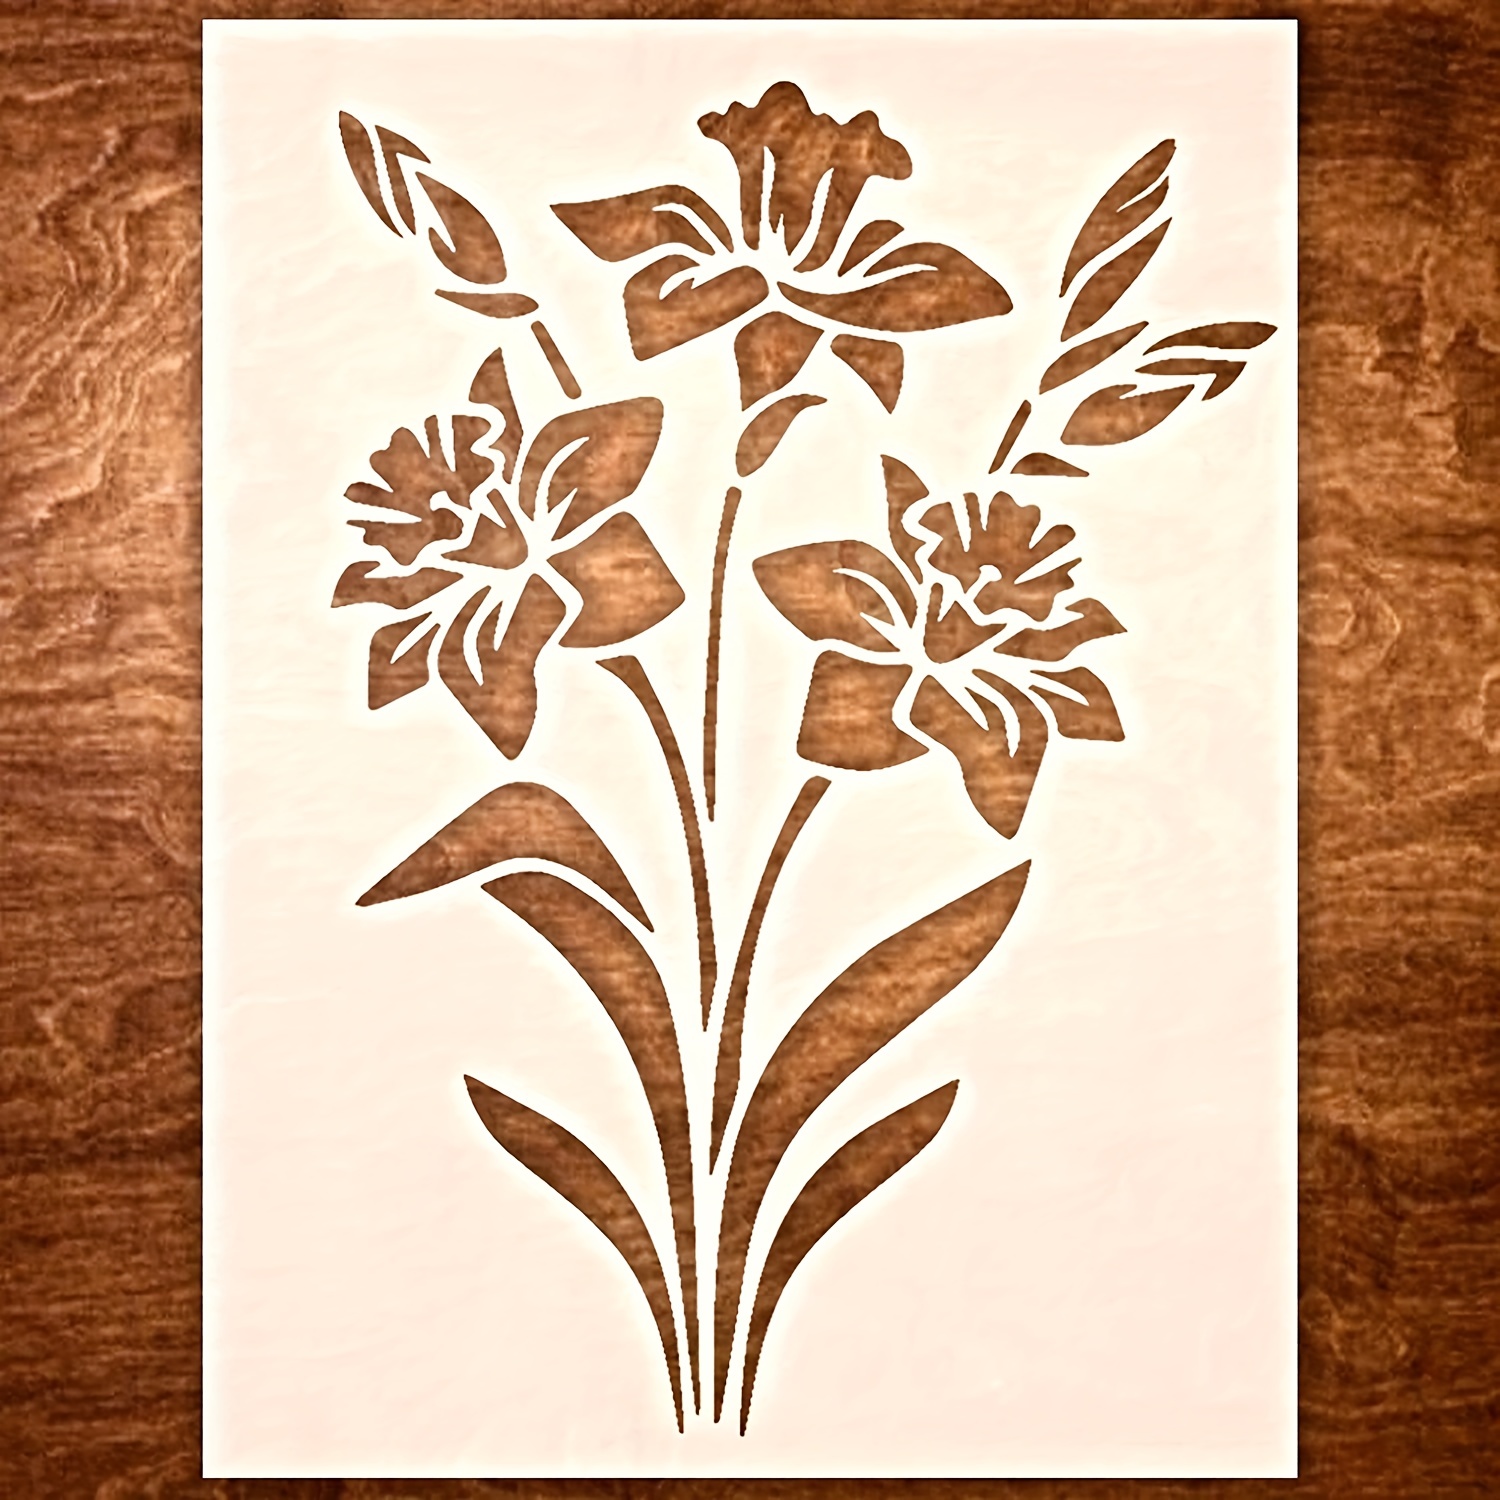 Plantillas stencil 5 Flores de Lis - Manualidades Badabadoc Art